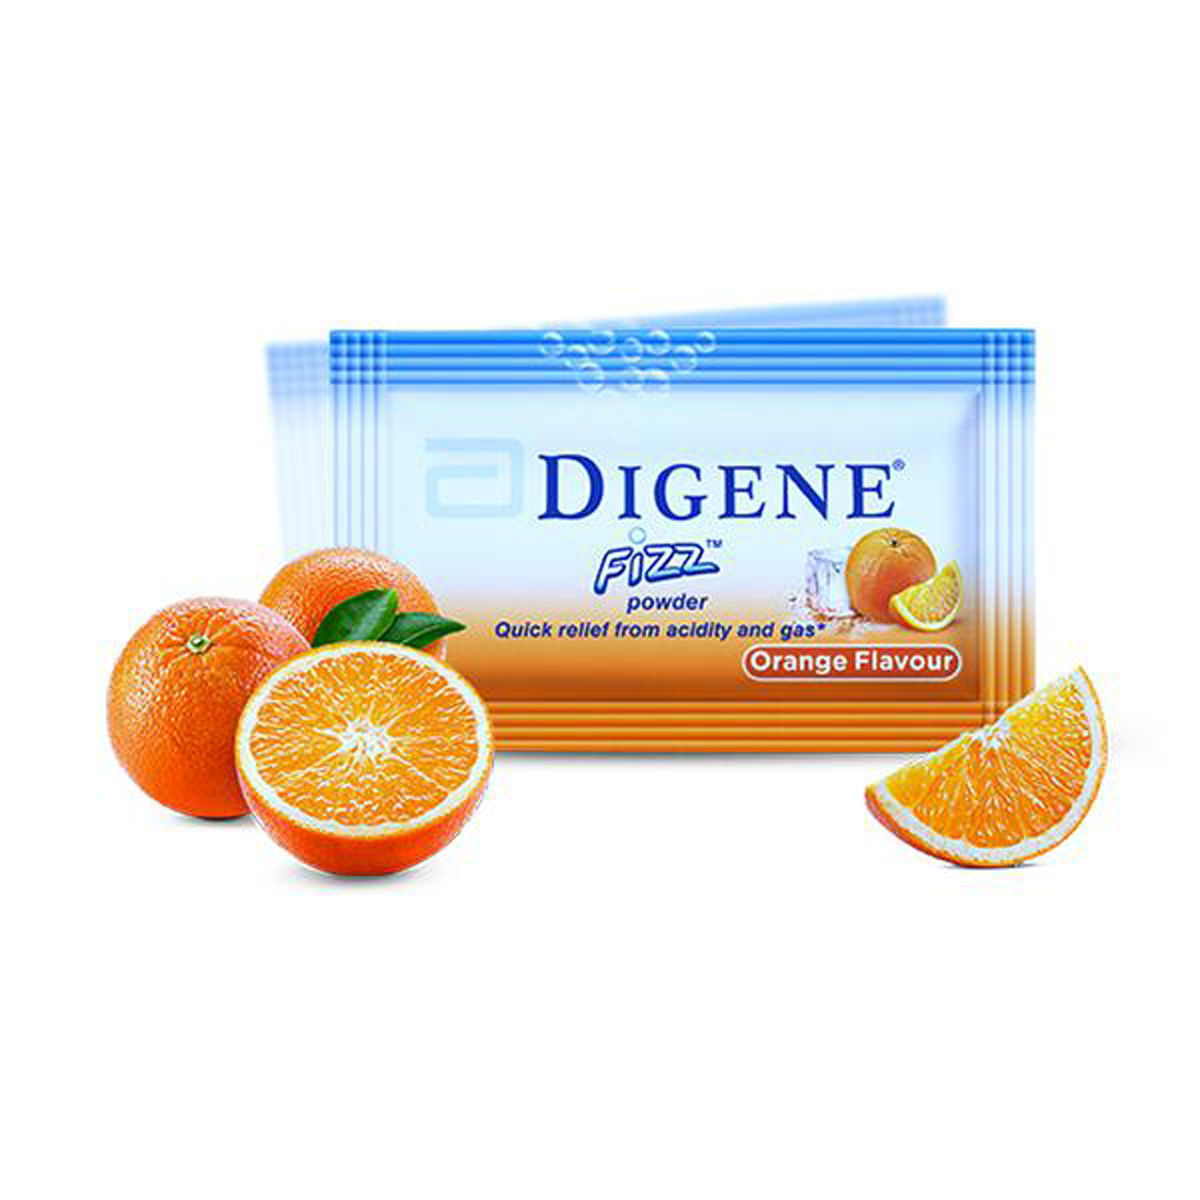 Buy Digene Fizz Orange Flavoured Powder, 5 gm Online